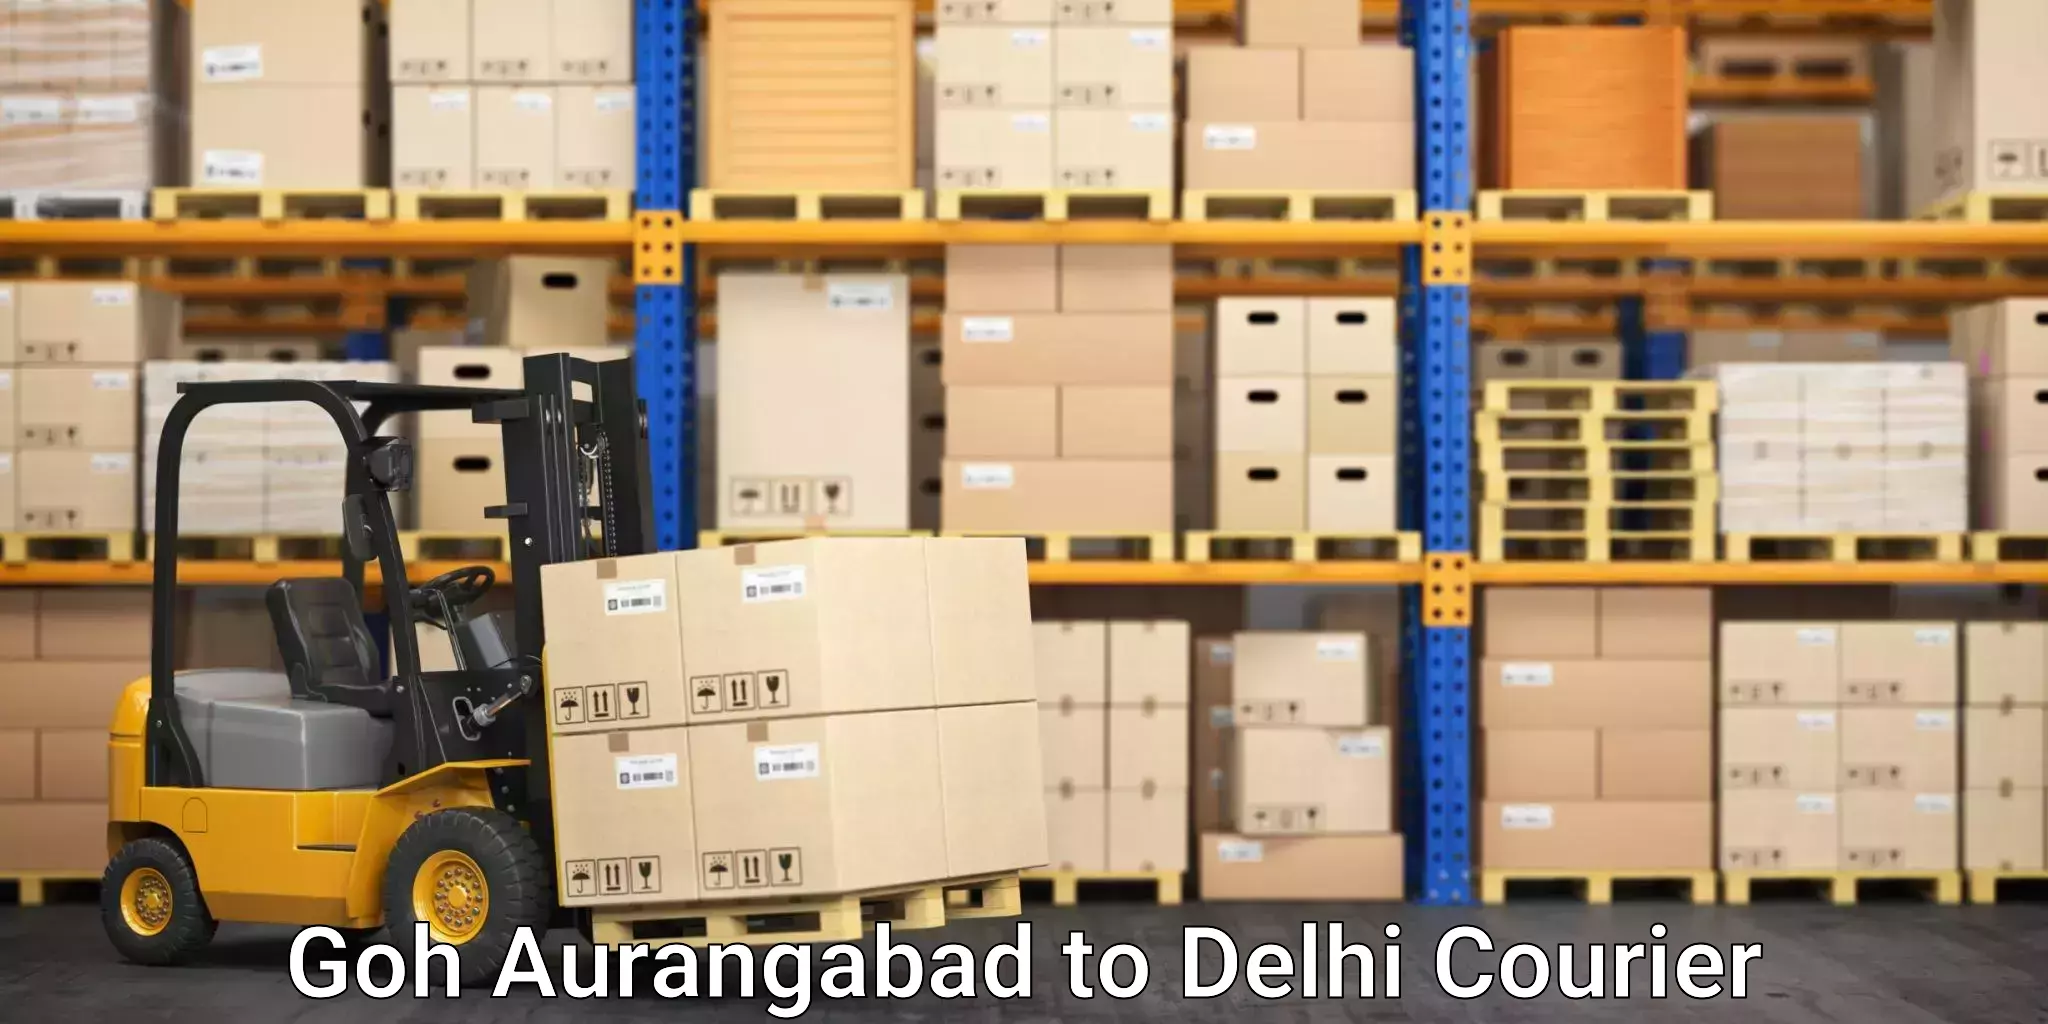 Furniture delivery service Goh Aurangabad to Indraprastha